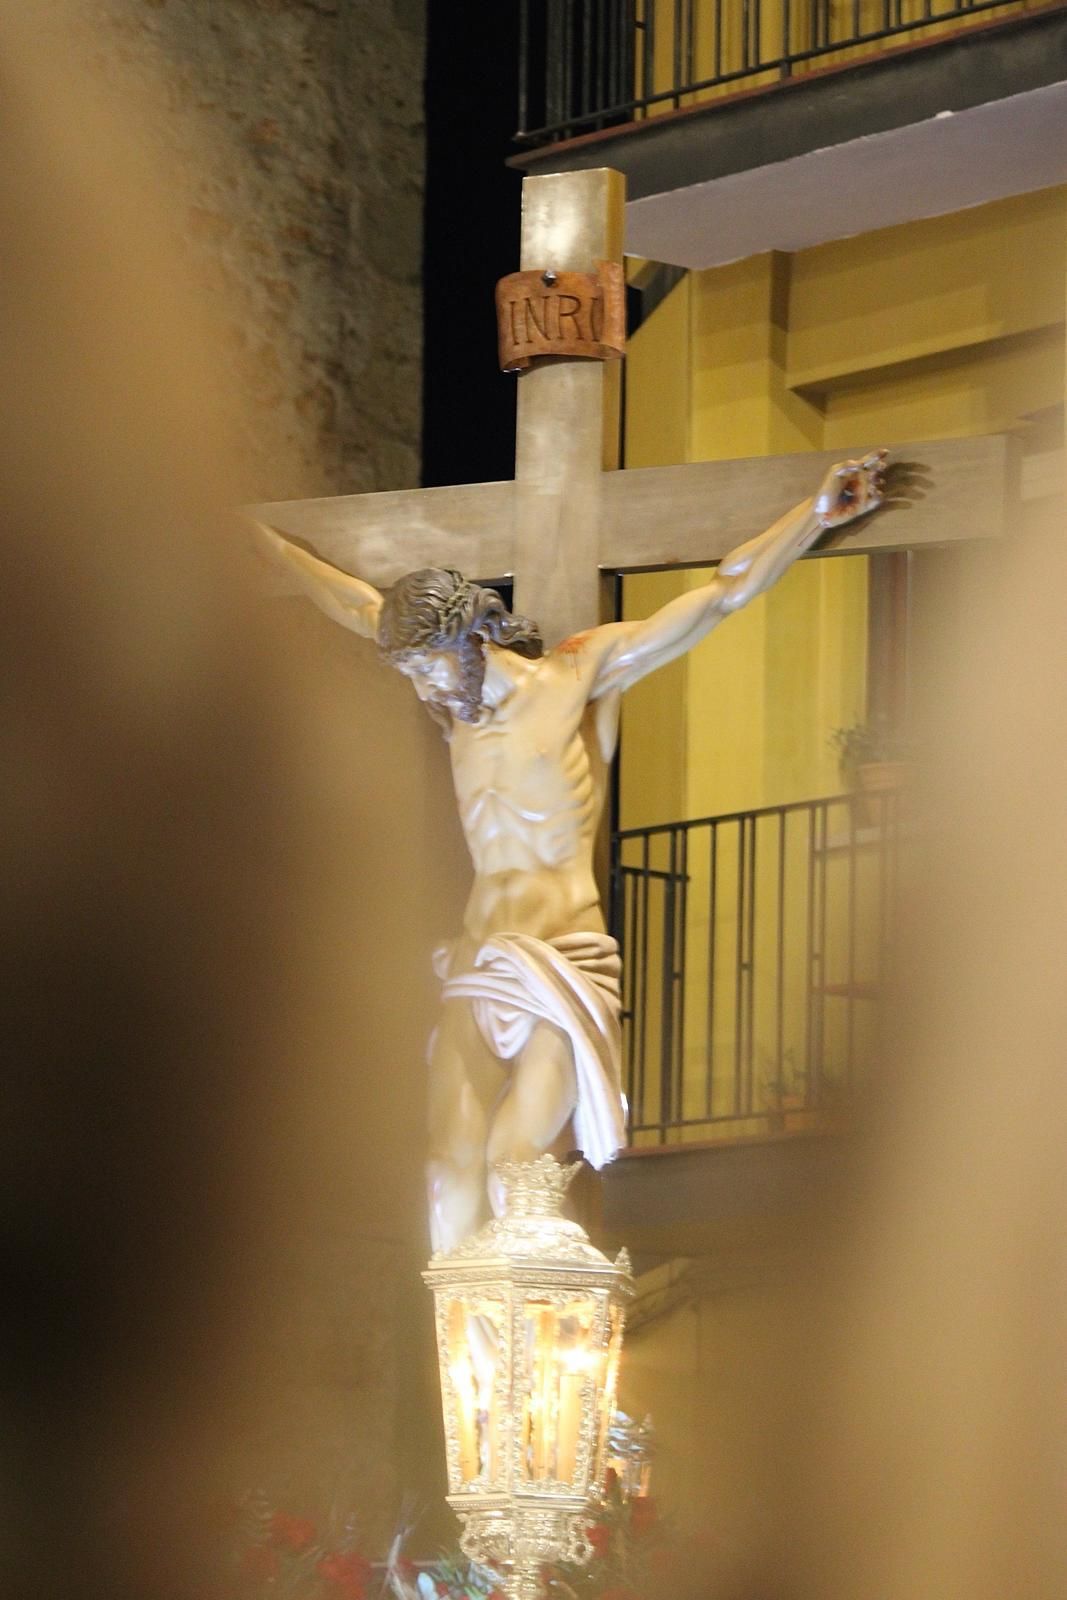 Las imágenes de la procesión del Santo Entierro en Almassora